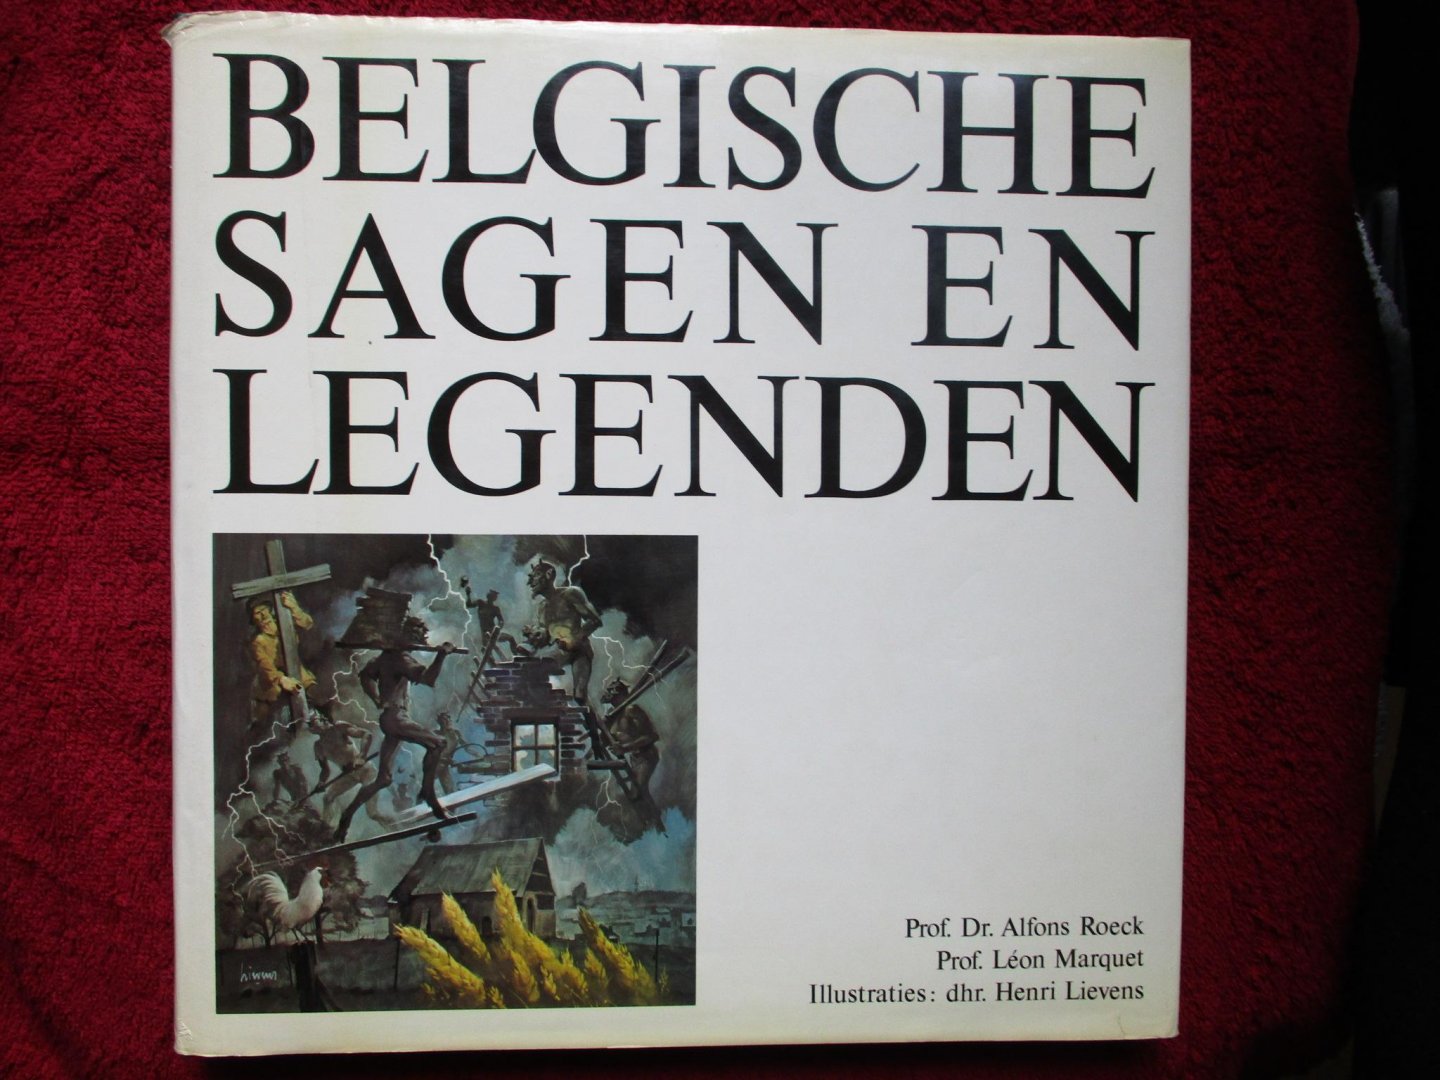 Roeck, Alfons,  Leon Marquet - Belgische sagen en legenden.